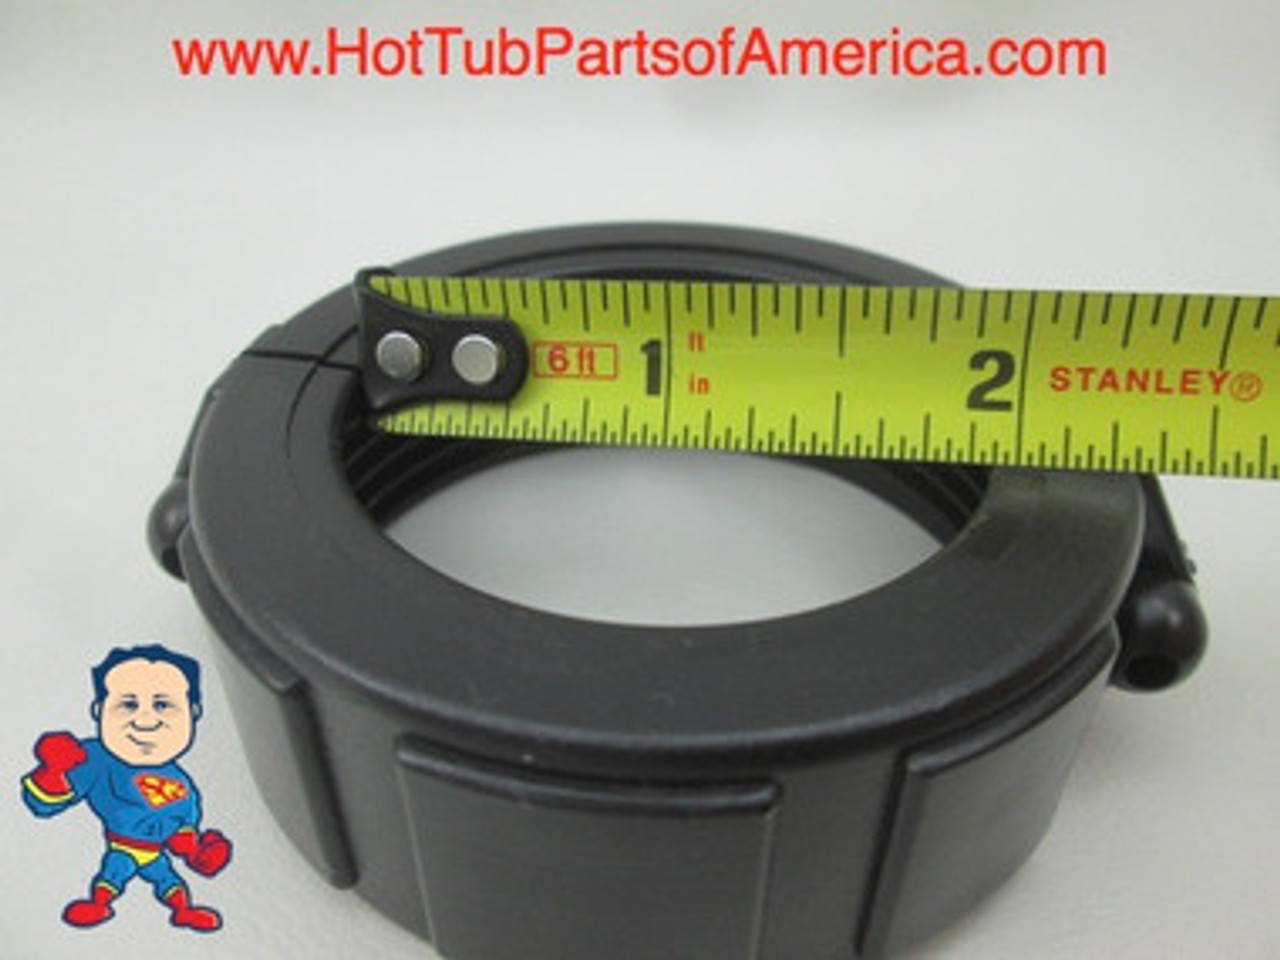 Heater Union Tailpiece, 1-1/2"mbt x 1-1/2"s, w/Split Nut